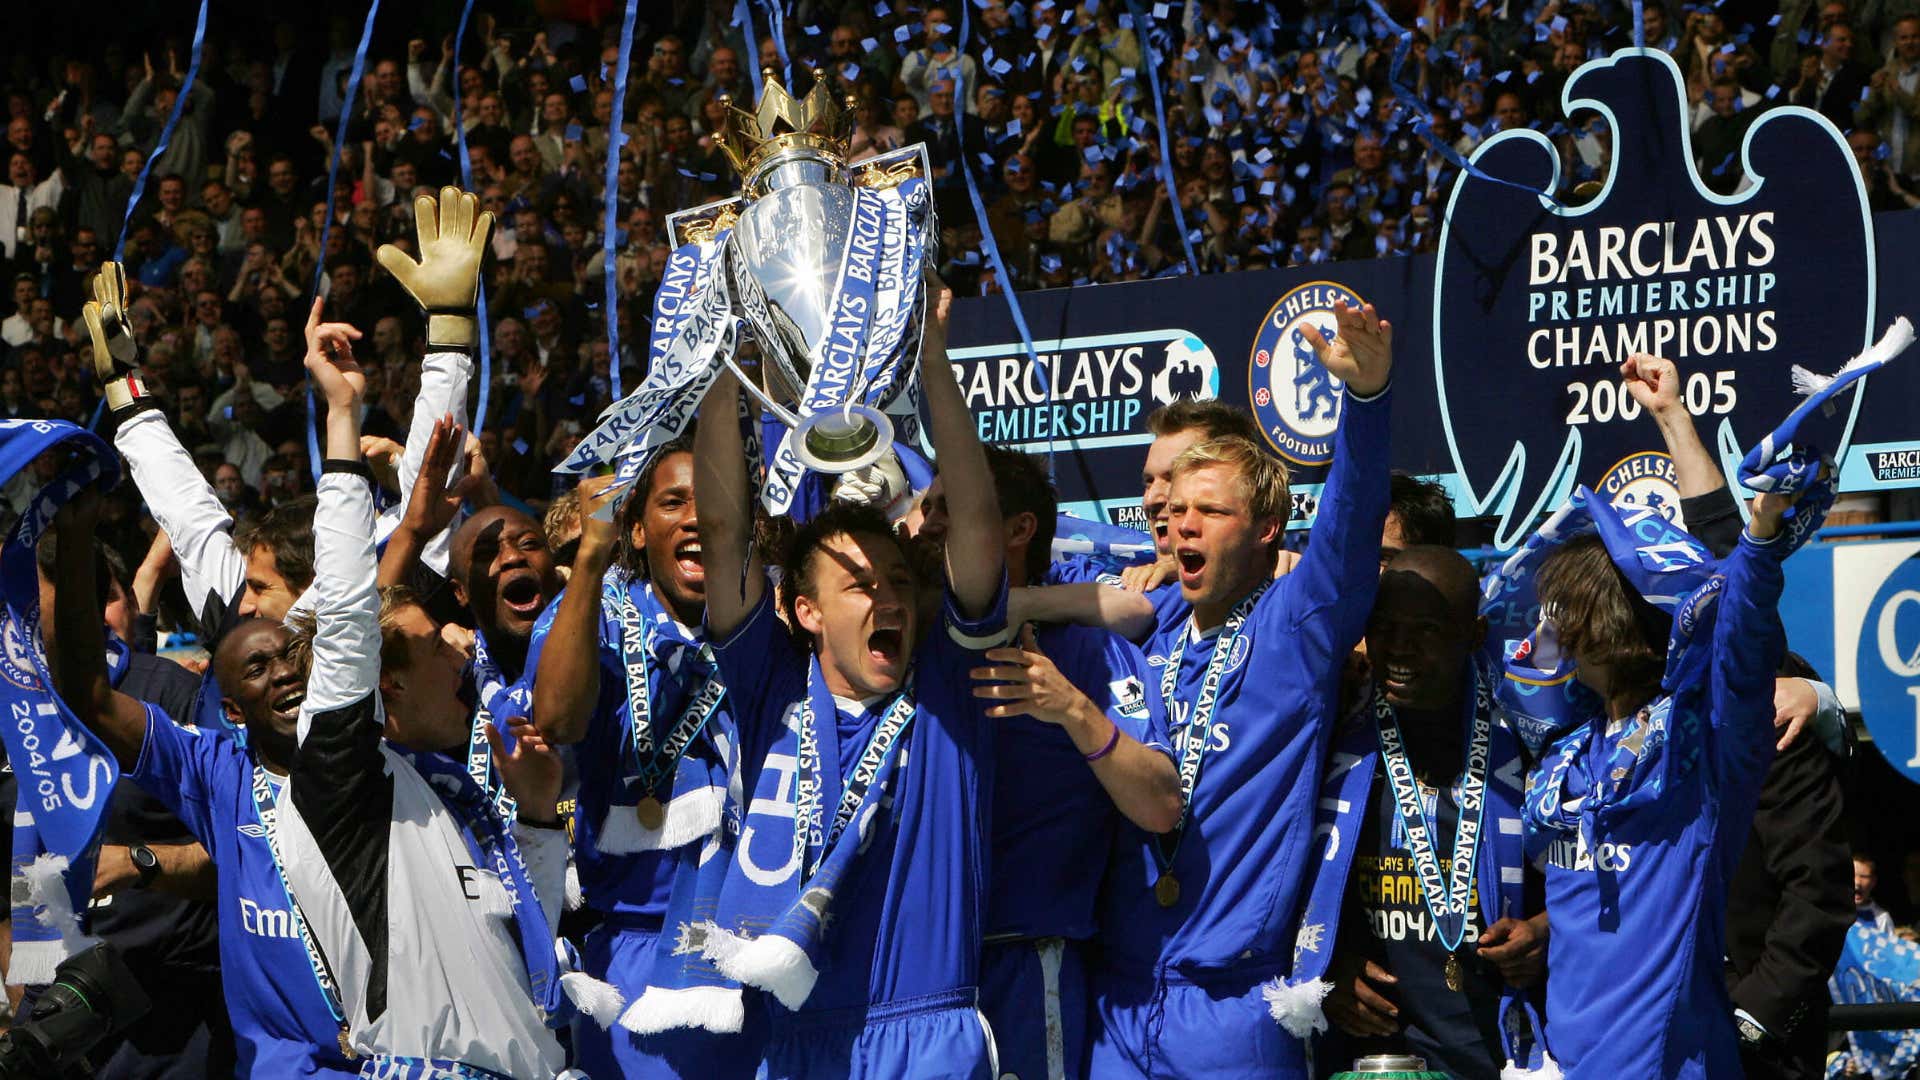 Chelsea campeón 2005